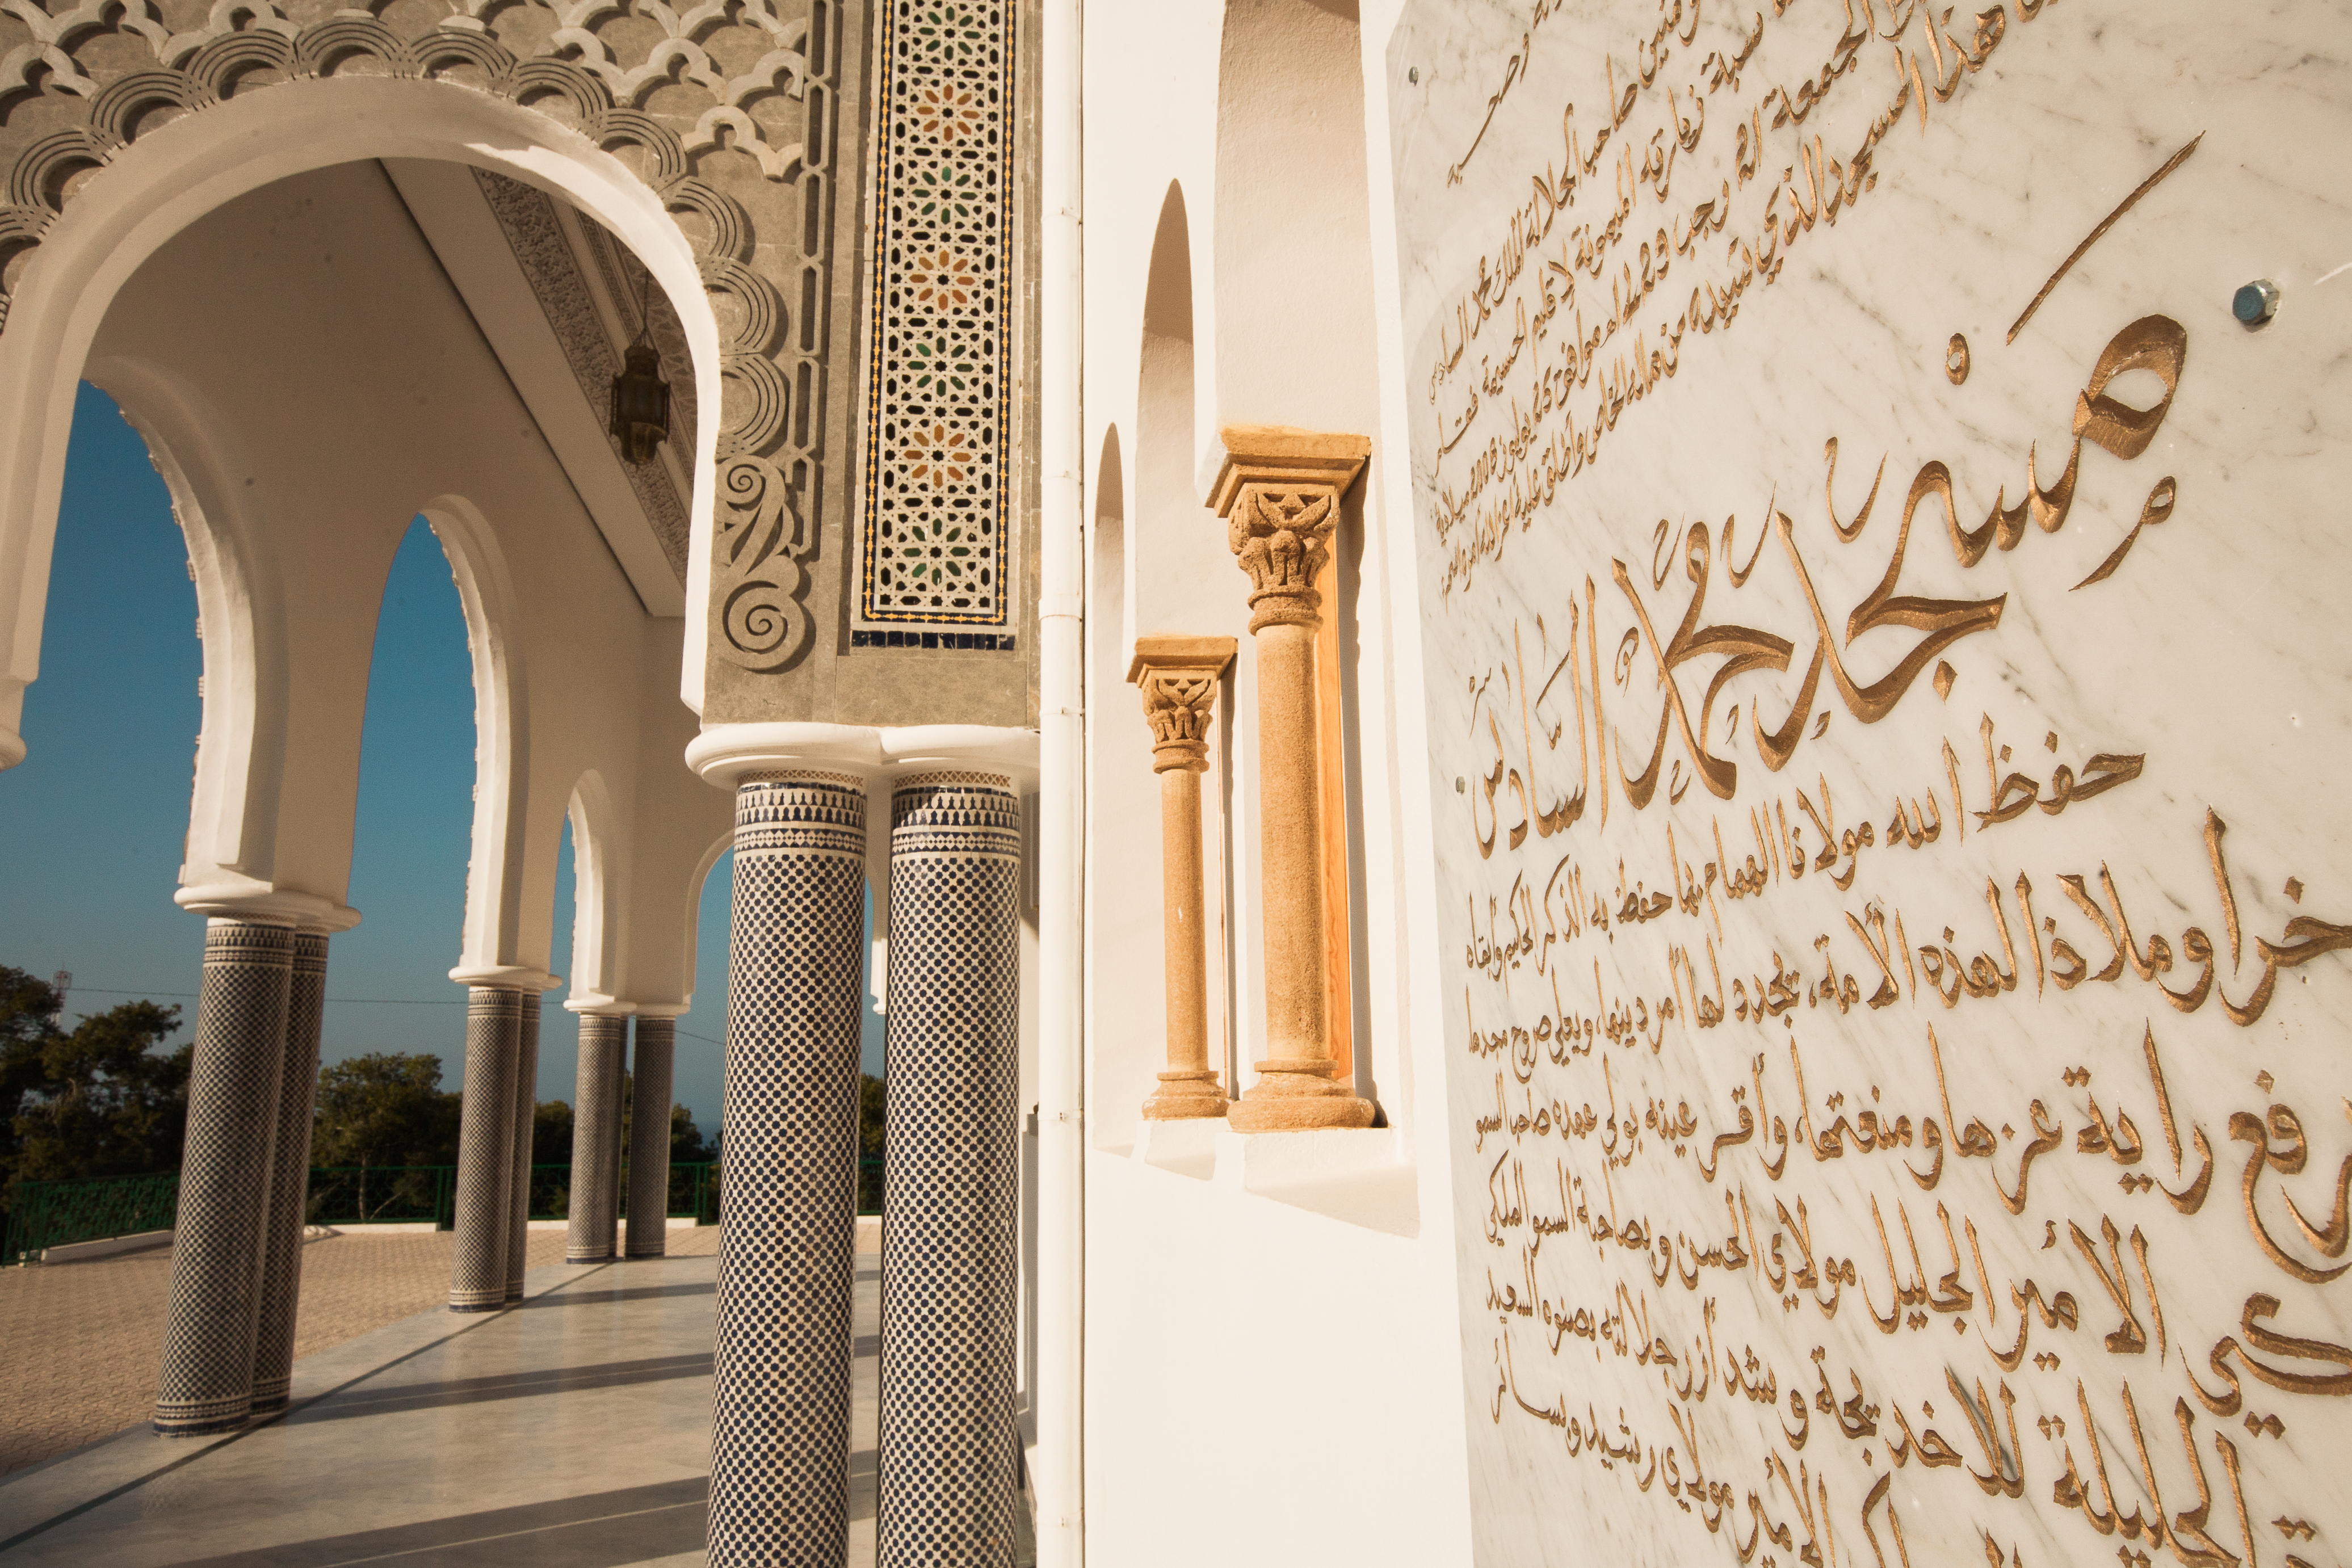 imb-photos-moroccan-mosque-4.jpg